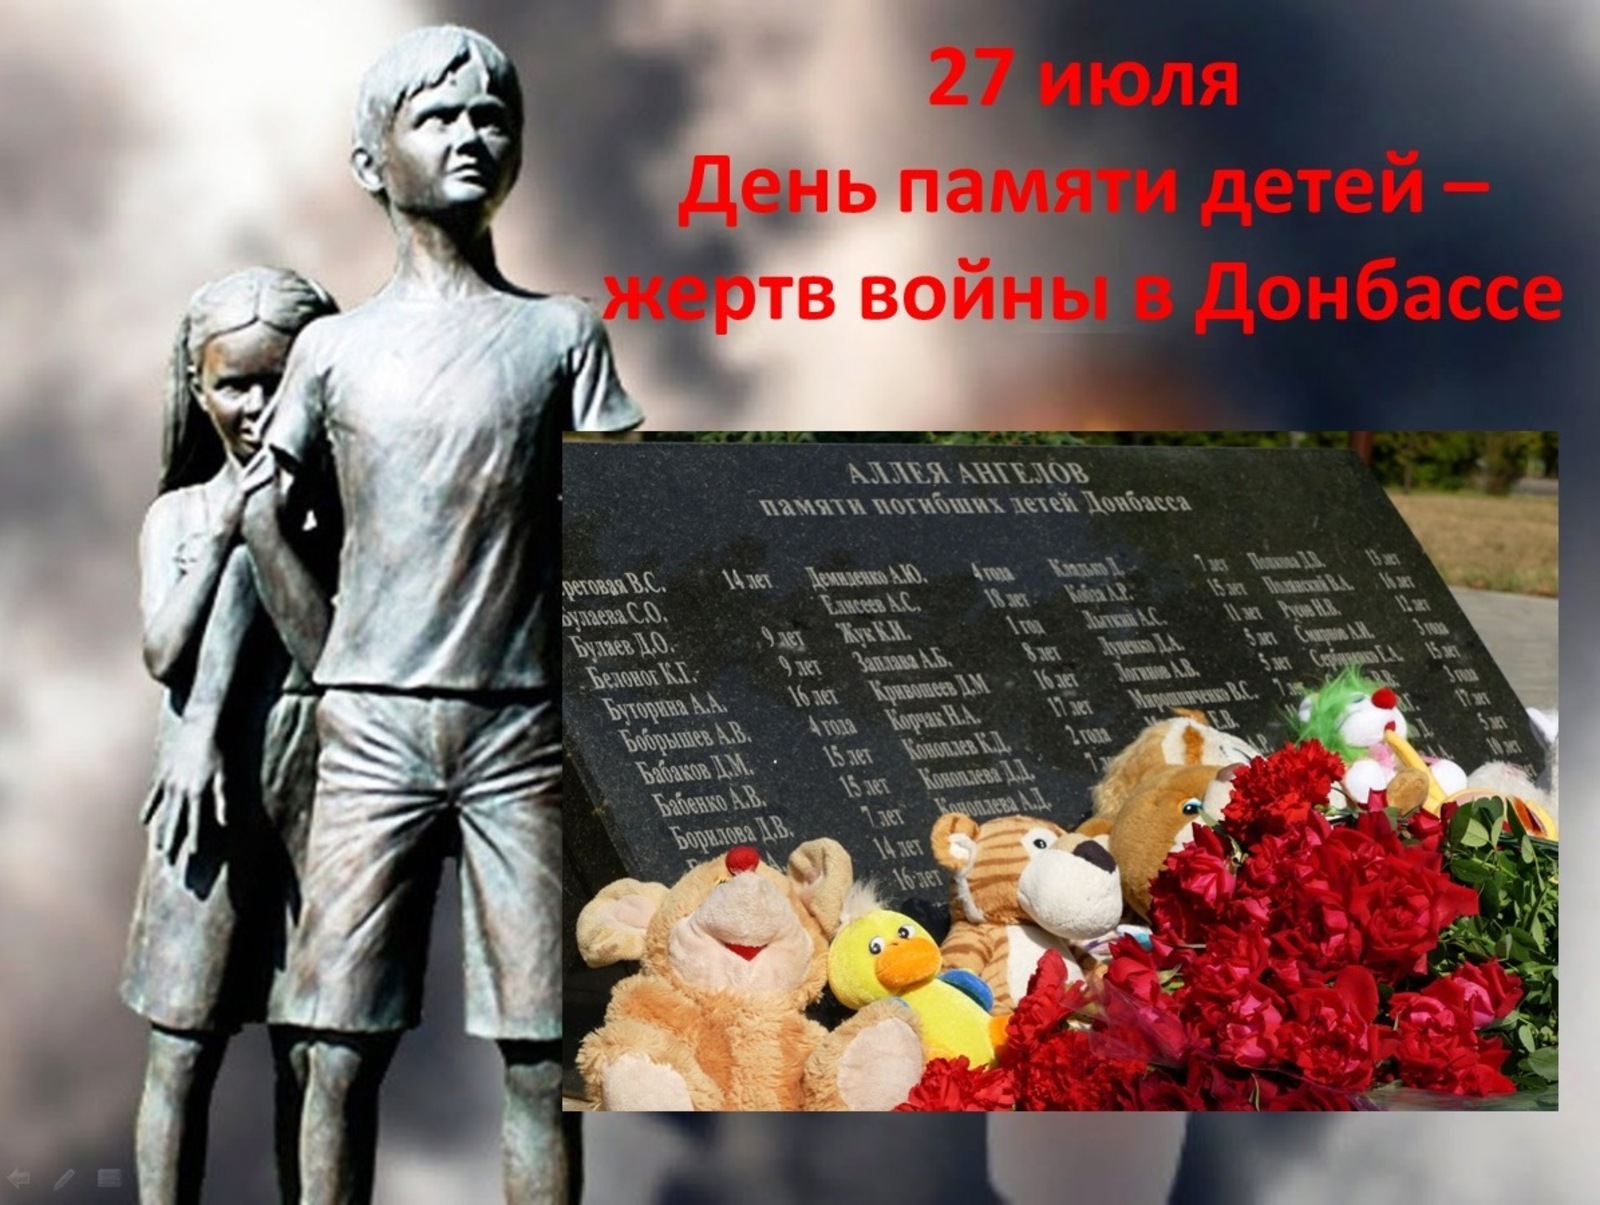 Сегодня в Уфе почтут память детей-жертв войны в Донбассе